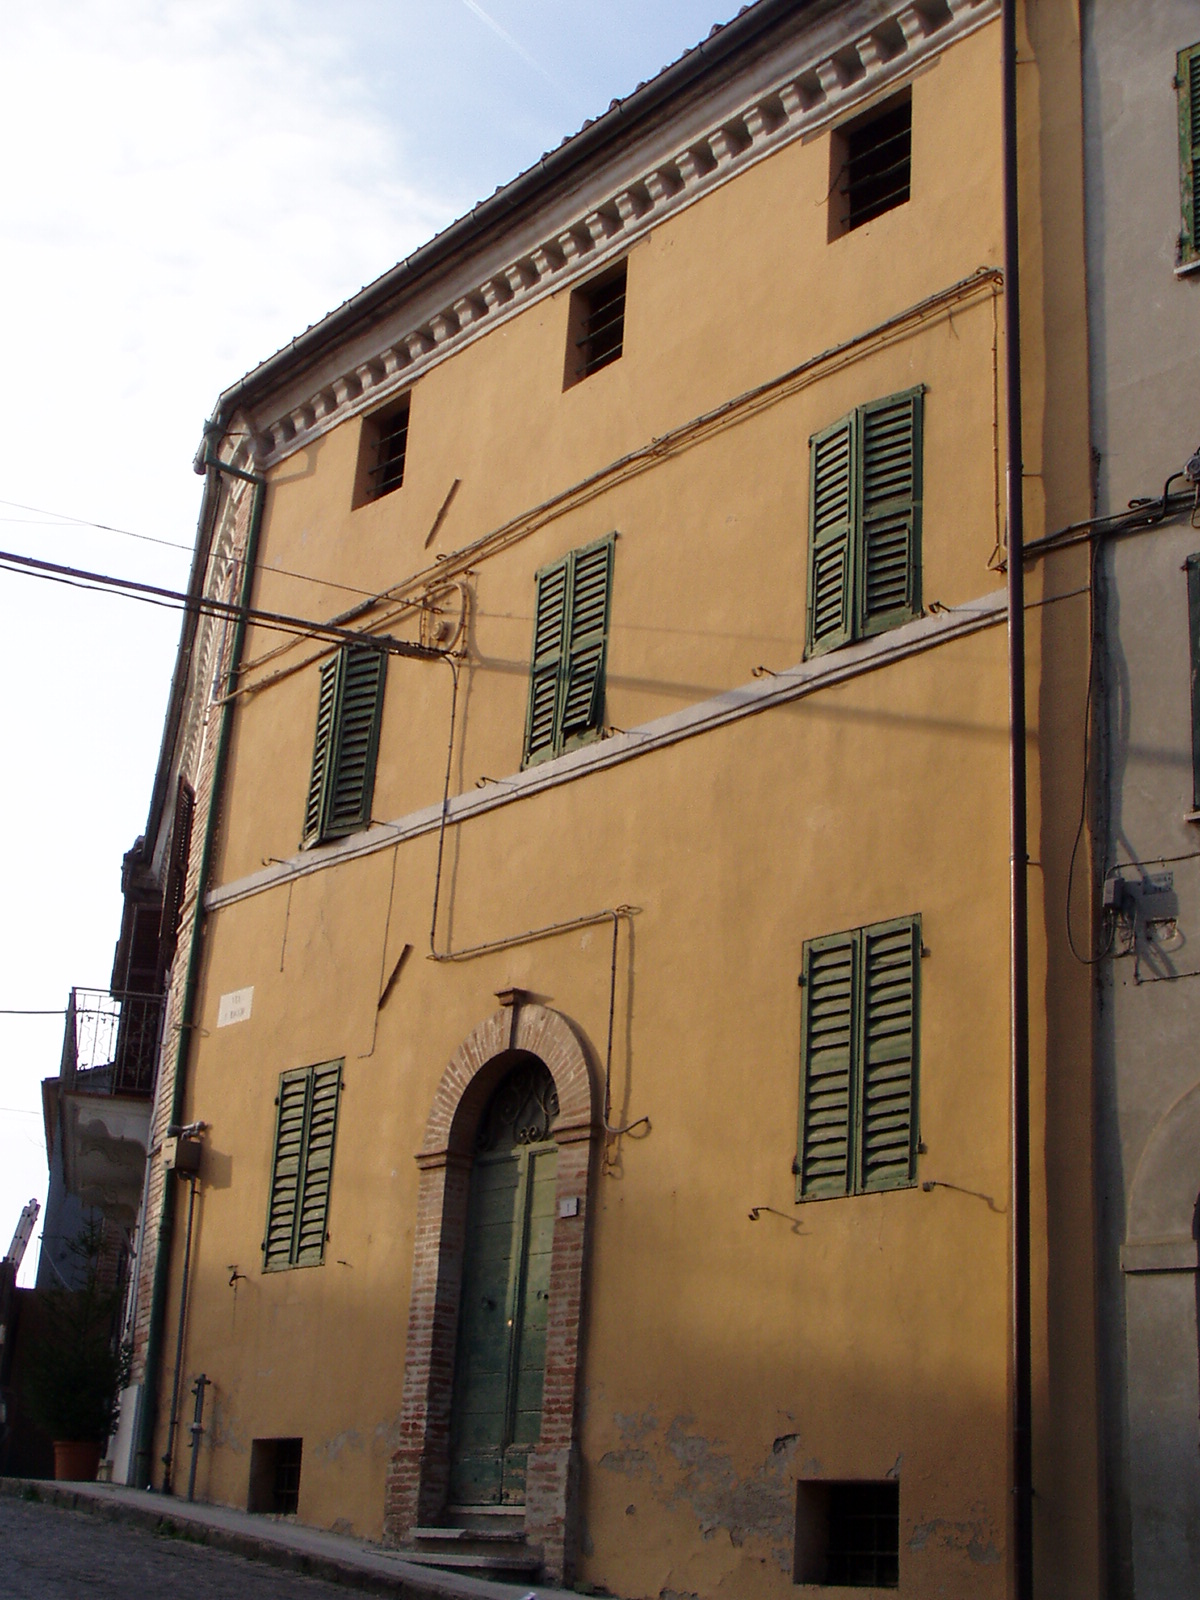 Palazzetto d'abitazione (palazzetto, d'abitazione) - Santa Maria Nuova (AN) 